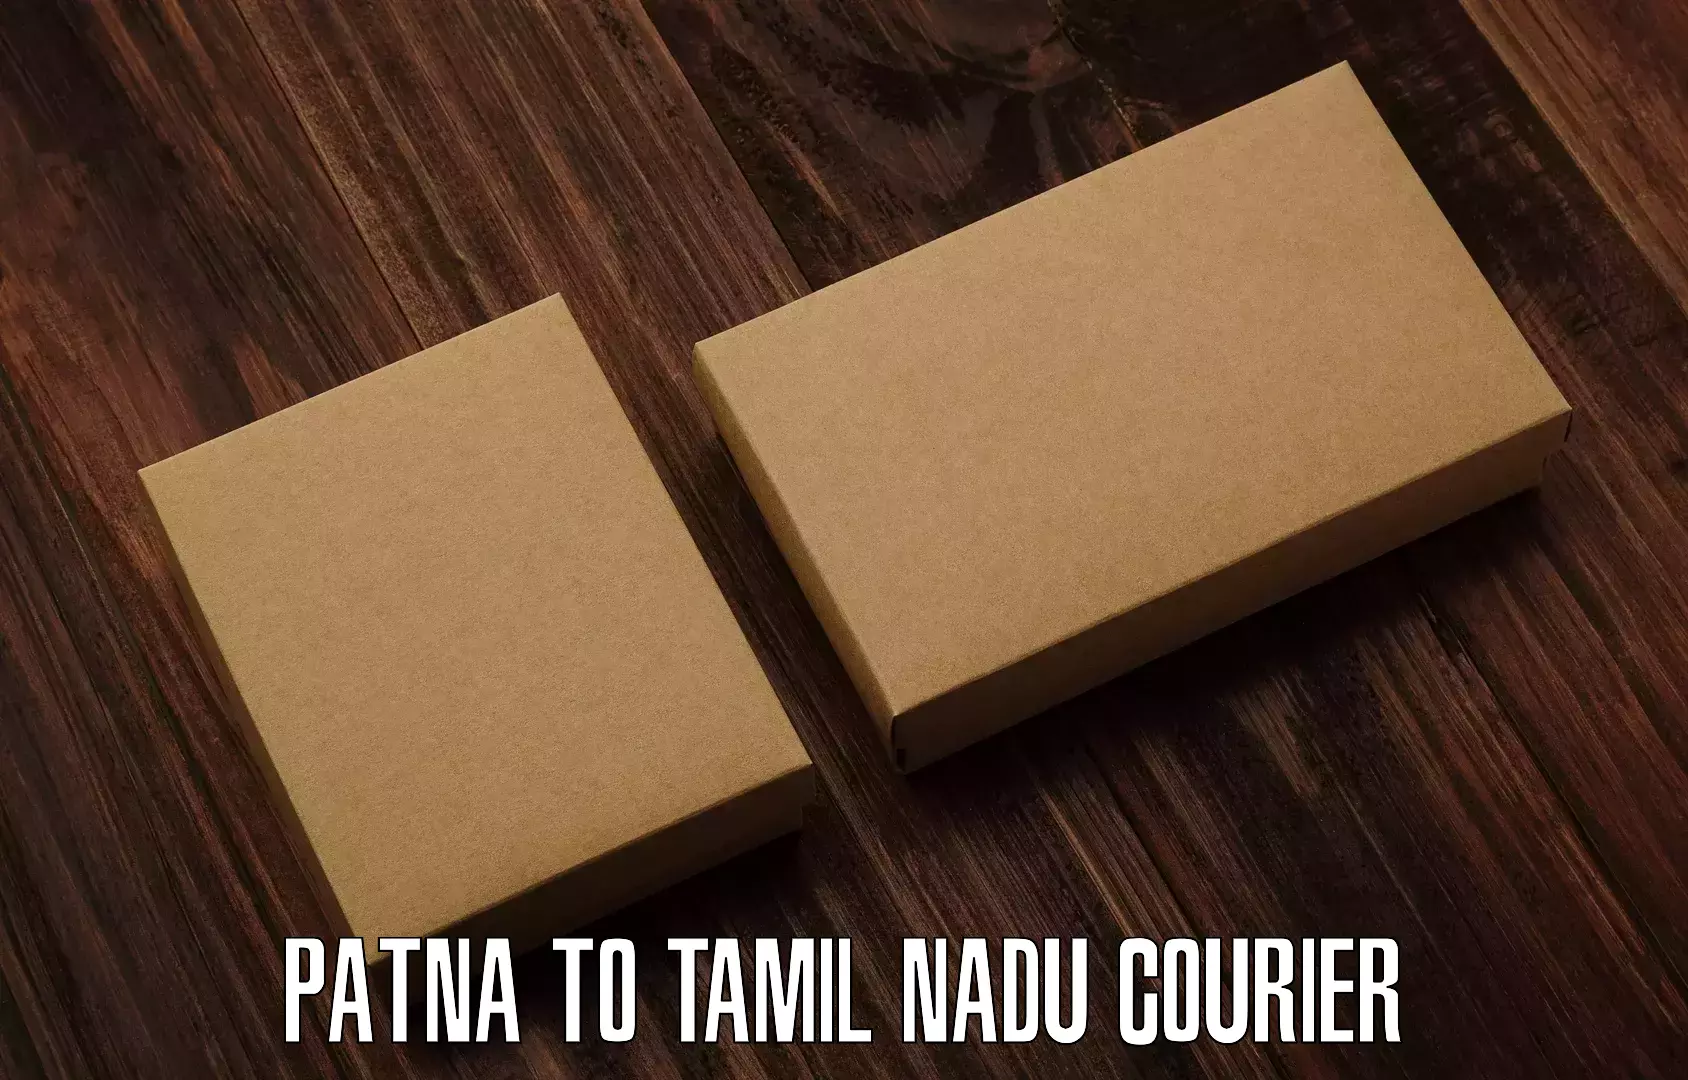 Shipping and handling Patna to Tamil Nadu